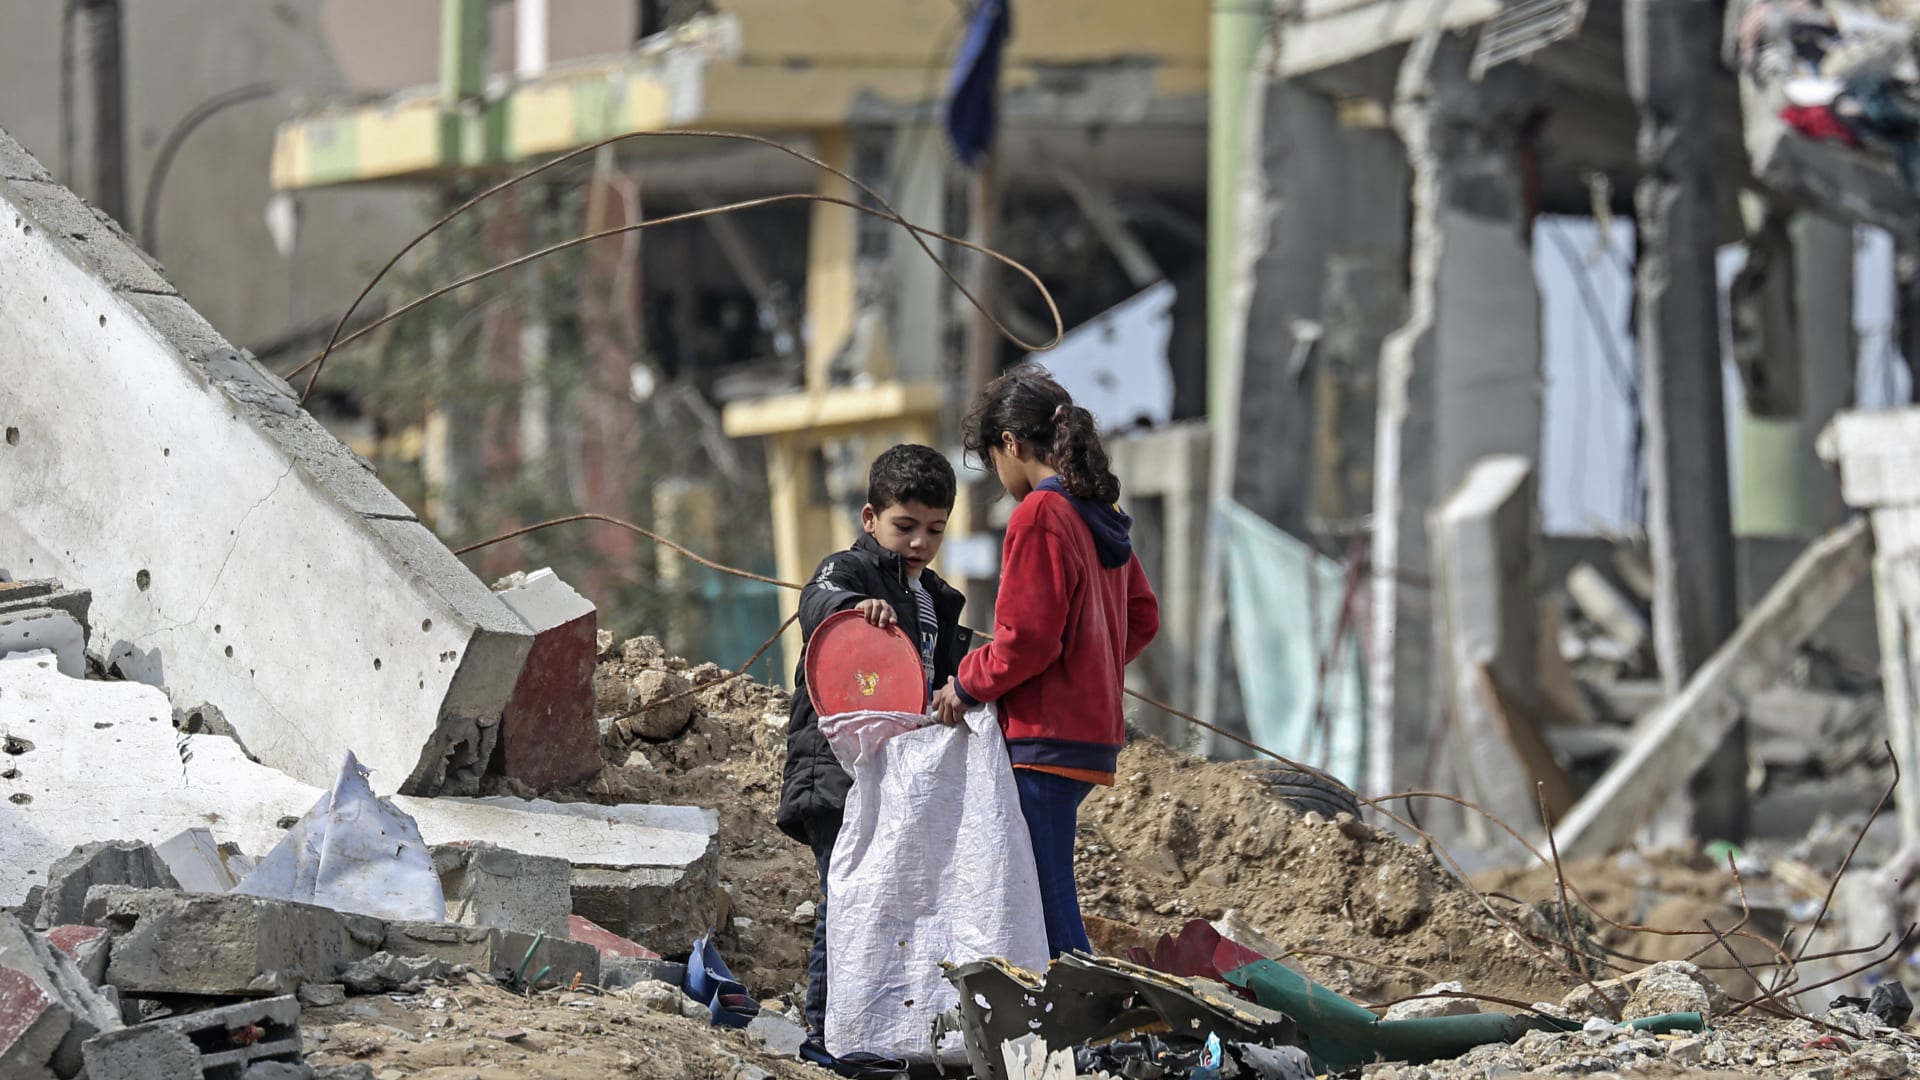 طبيب منظمة الصحة العالمية لـCNN: الحياة تُستنزف من قطاع غزة بأكمله